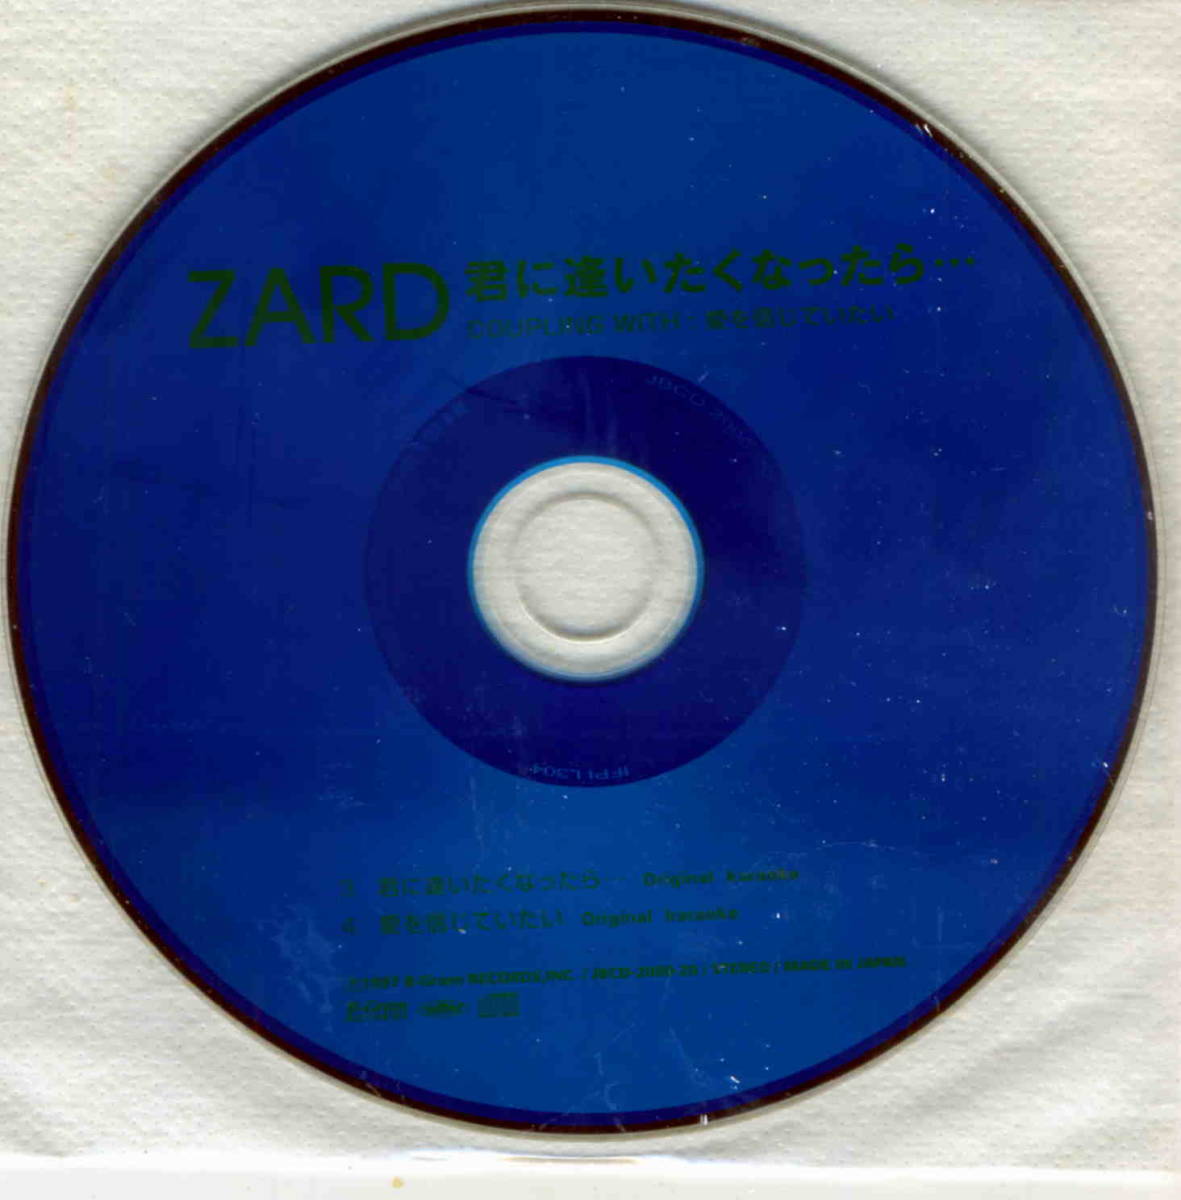 ヤフオク! - ZARD PREMIUM BOX 1991-2001 SINGLE COLLECTION...